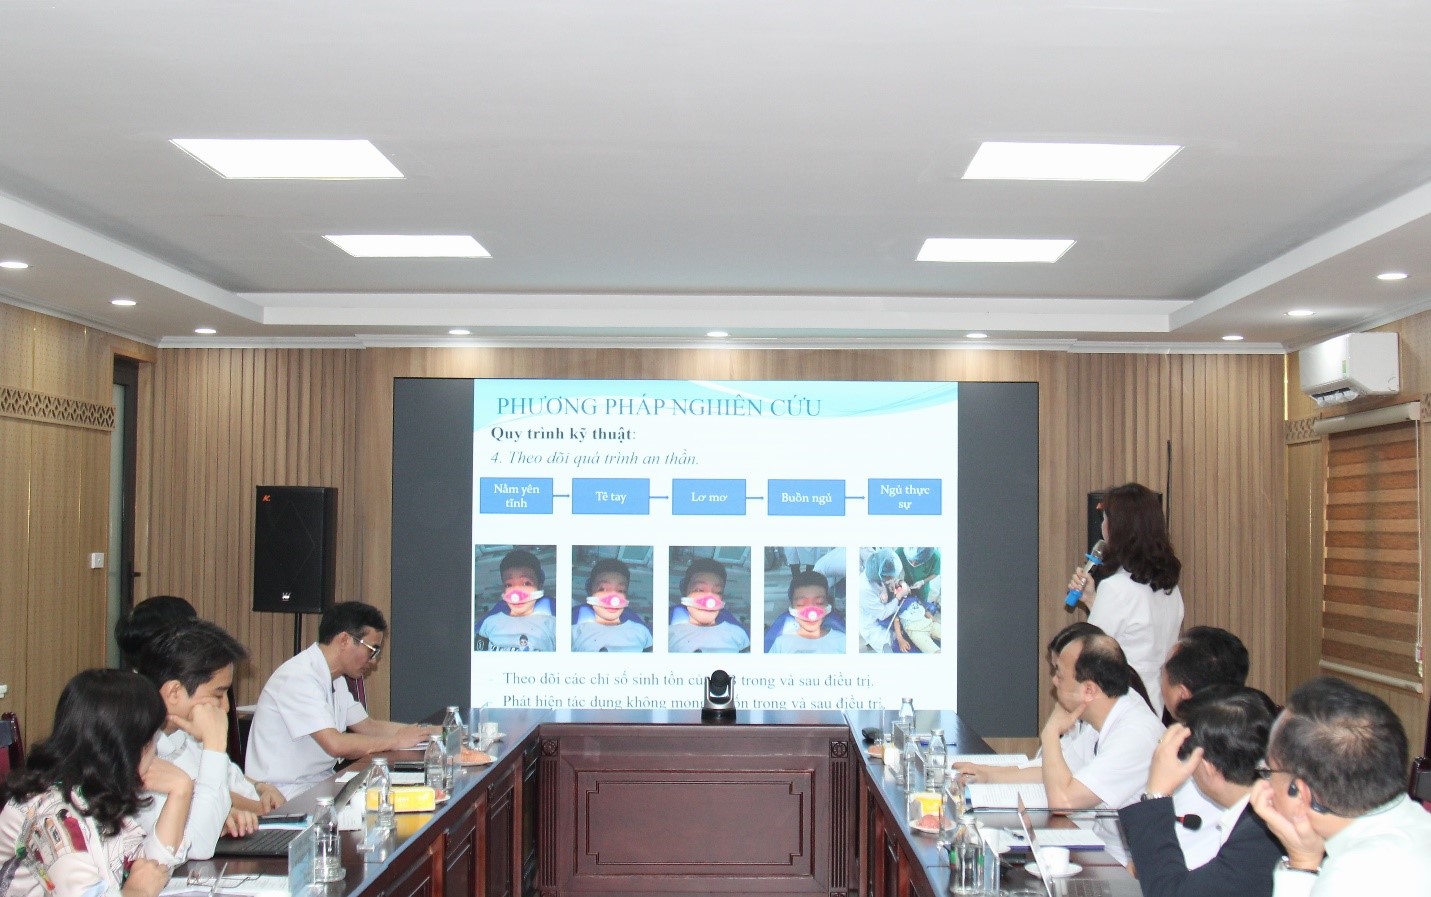 BSCKII. Nguyễn Thị Hạnh, Phó trưởng khoa Răng trẻ em báo cáo về kết quả thực hiện thí điểm kỹ thuật mới